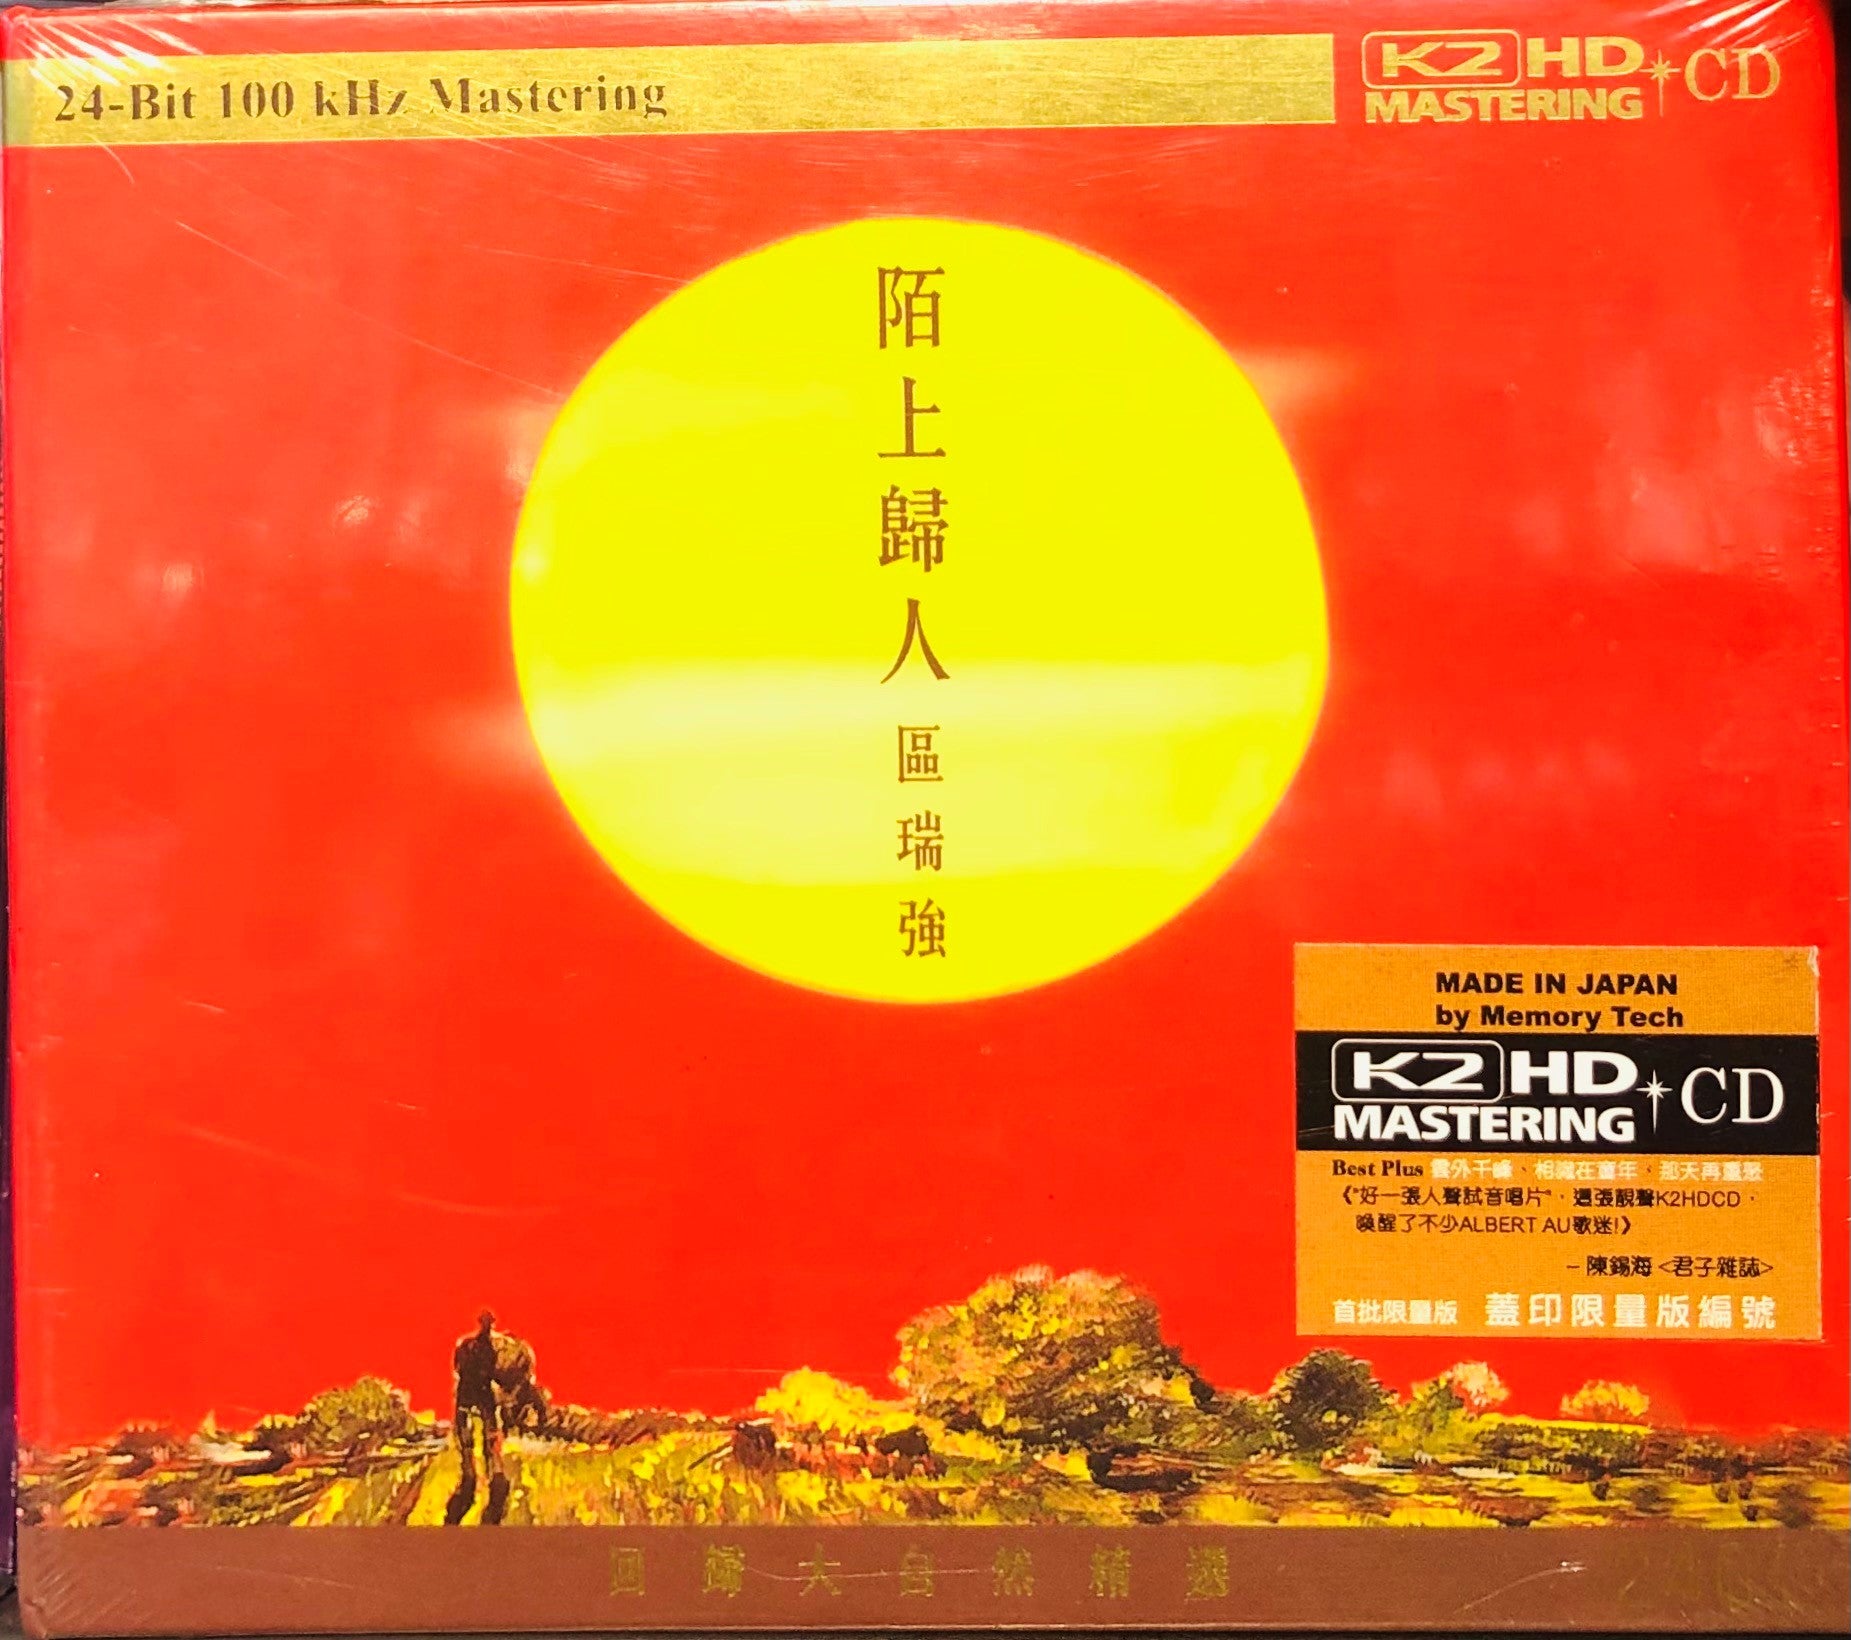 ALBERT AU - 區瑞強 陌上歸人 (K2HD) CD MADE IN JAPAN